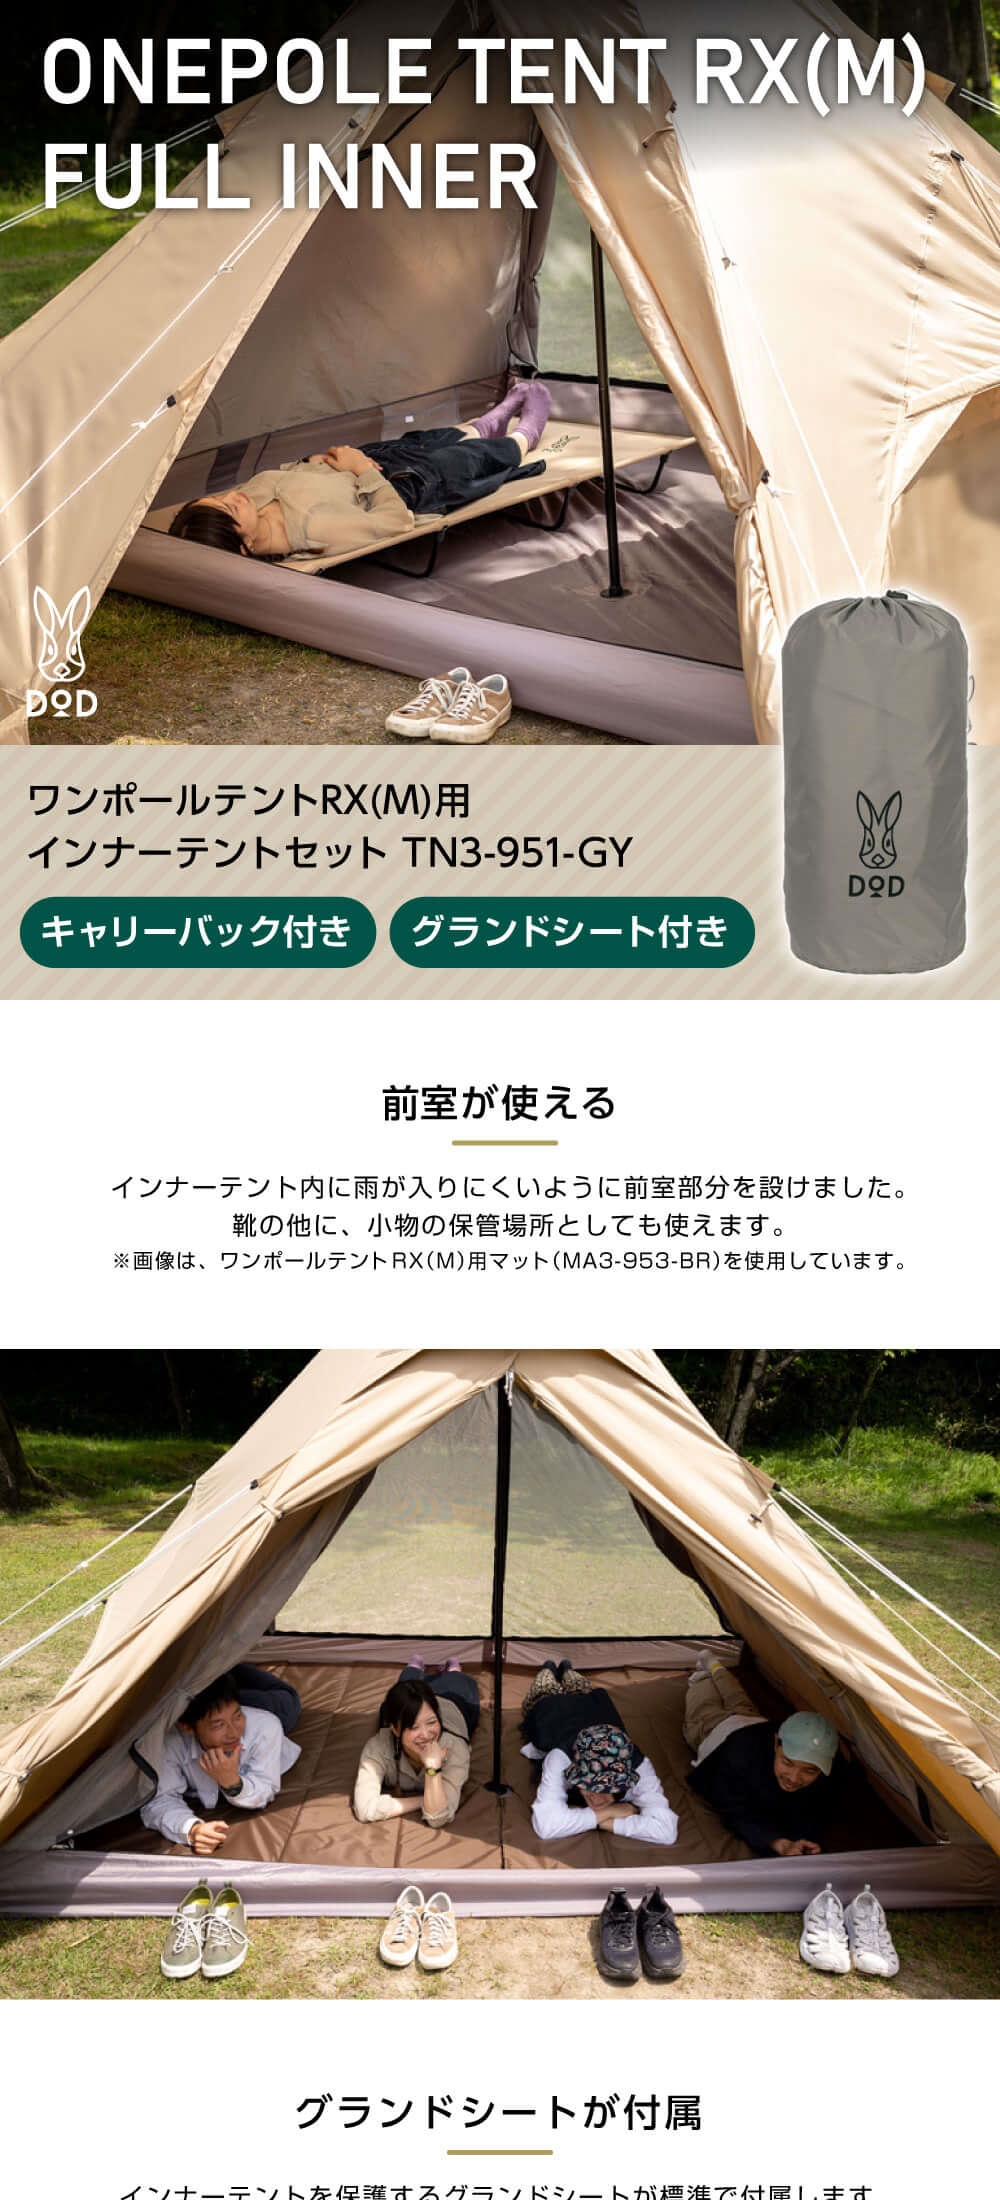 DOD テント ワンポールテントRX M 用インナーテントセット TN3-951-GY dod アウトドア キャンプ